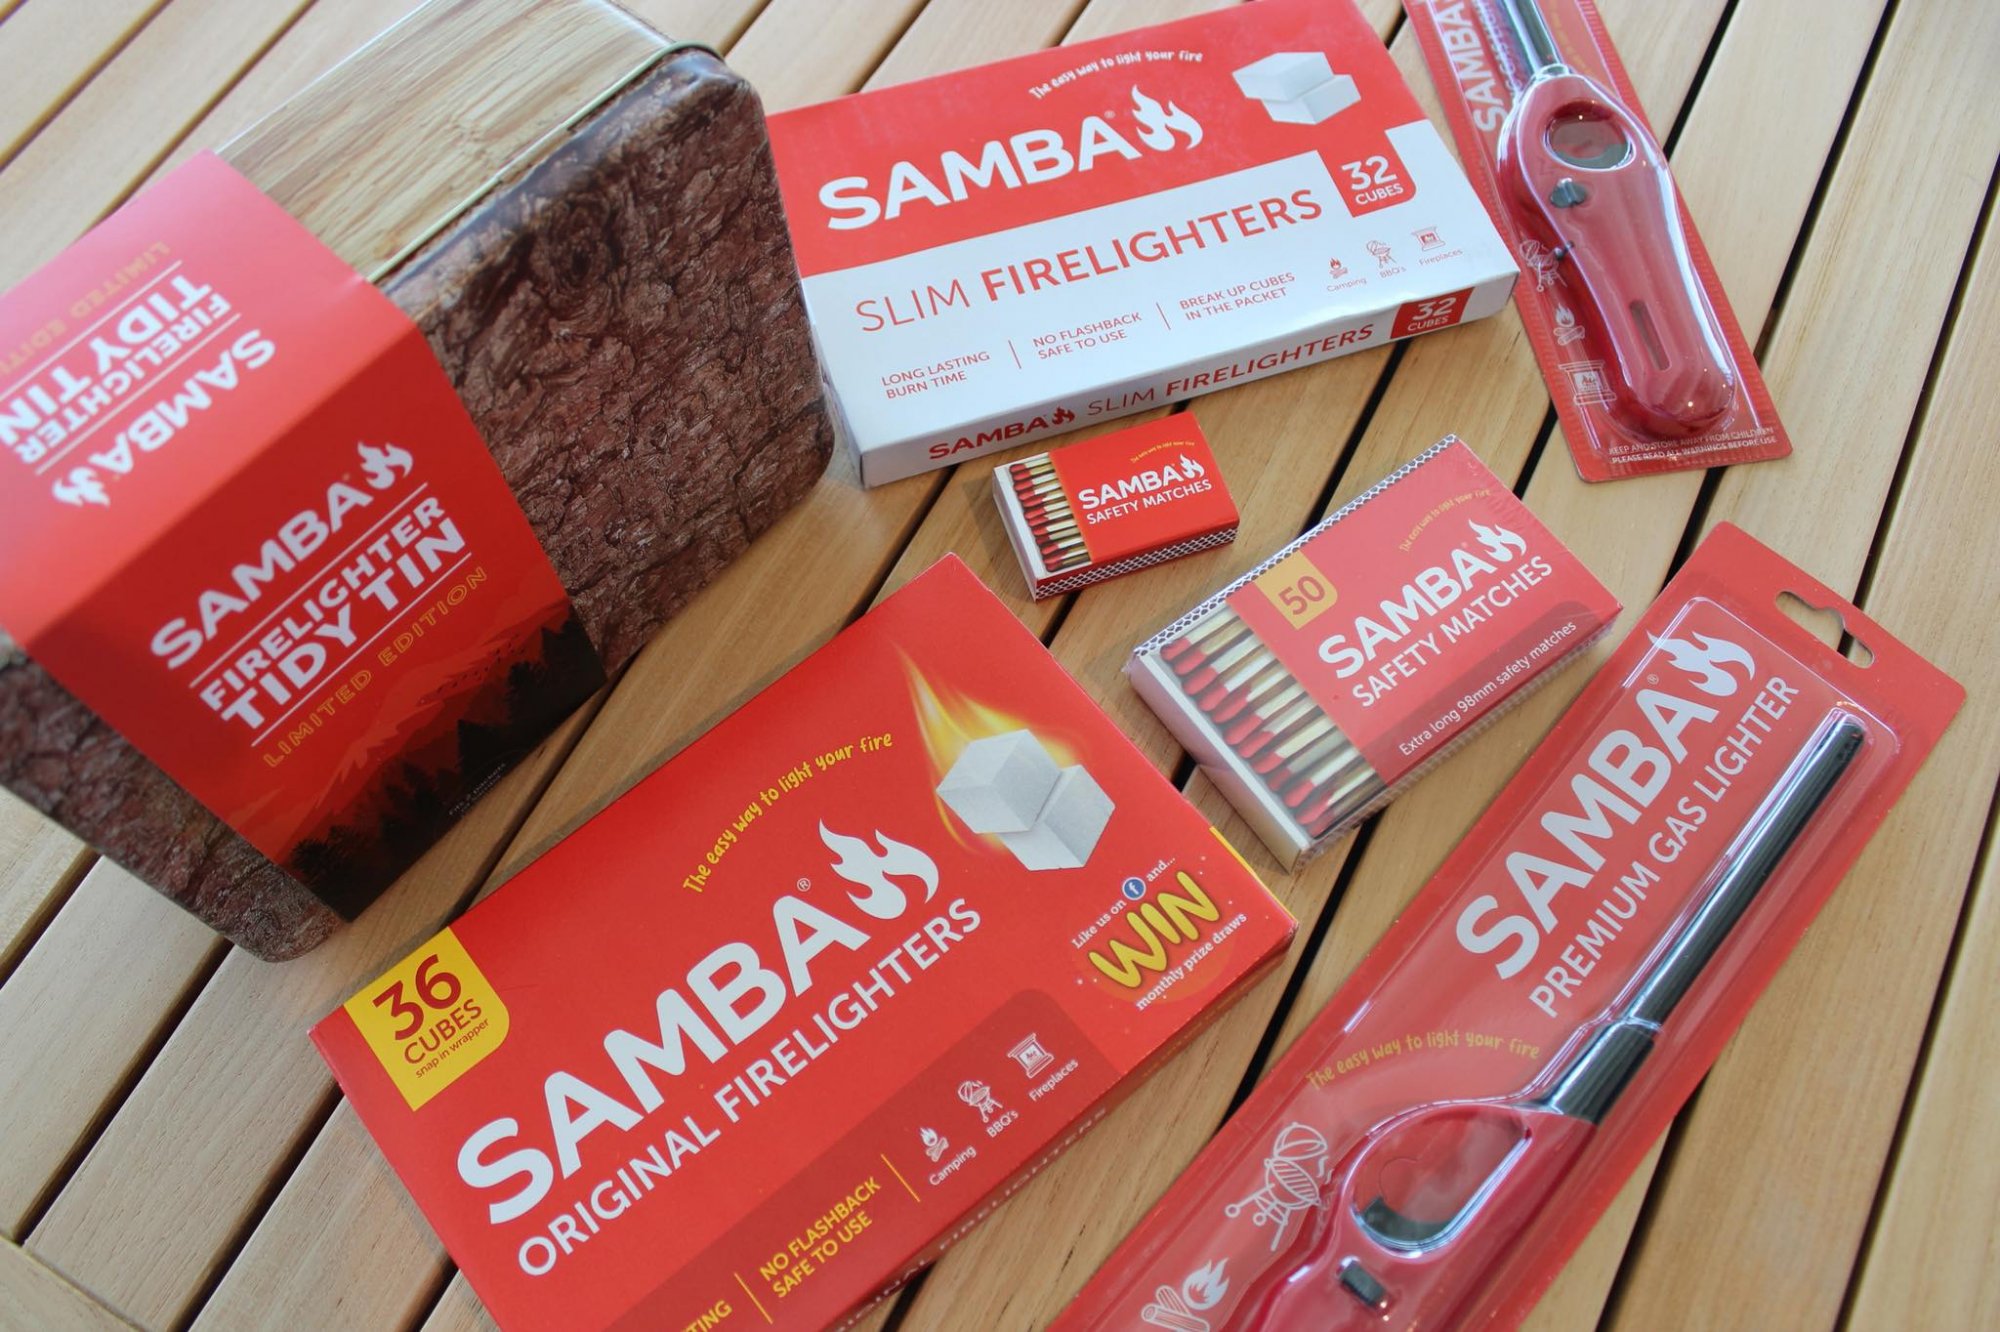 Samba Fire BBQ products